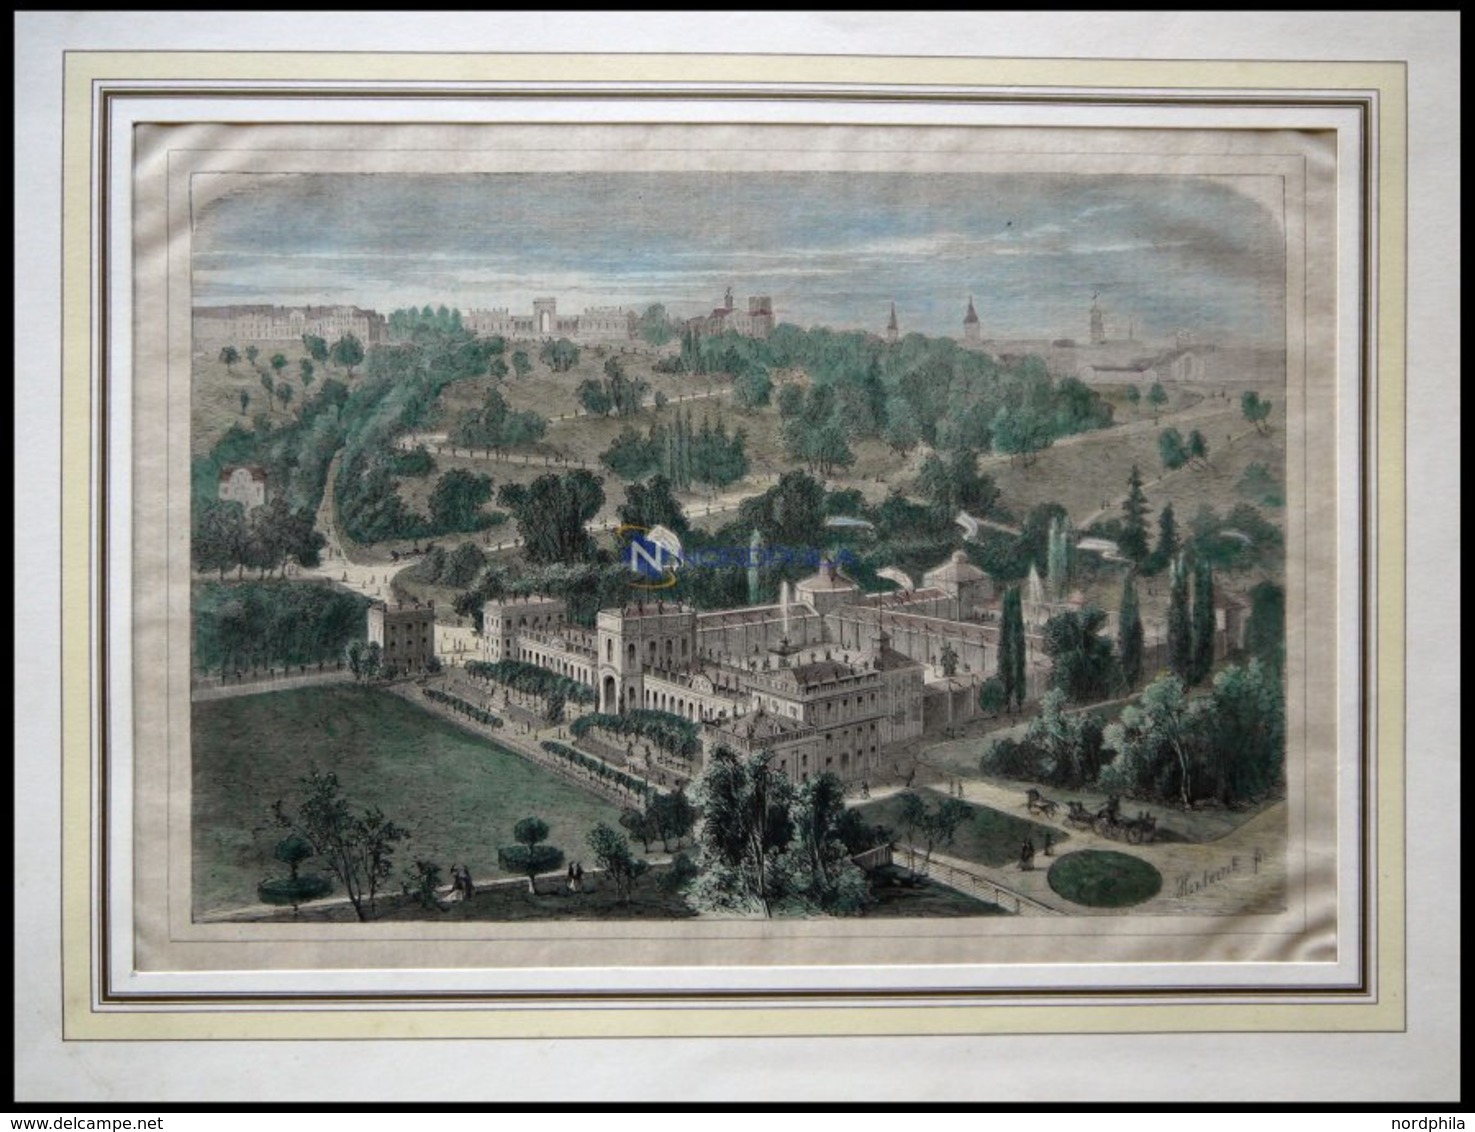 KASSEL: Das Orangerieschloß Mit Der Industrieausstellungshalle, Kolorierter Holzstich Um 1880 - Lithographien